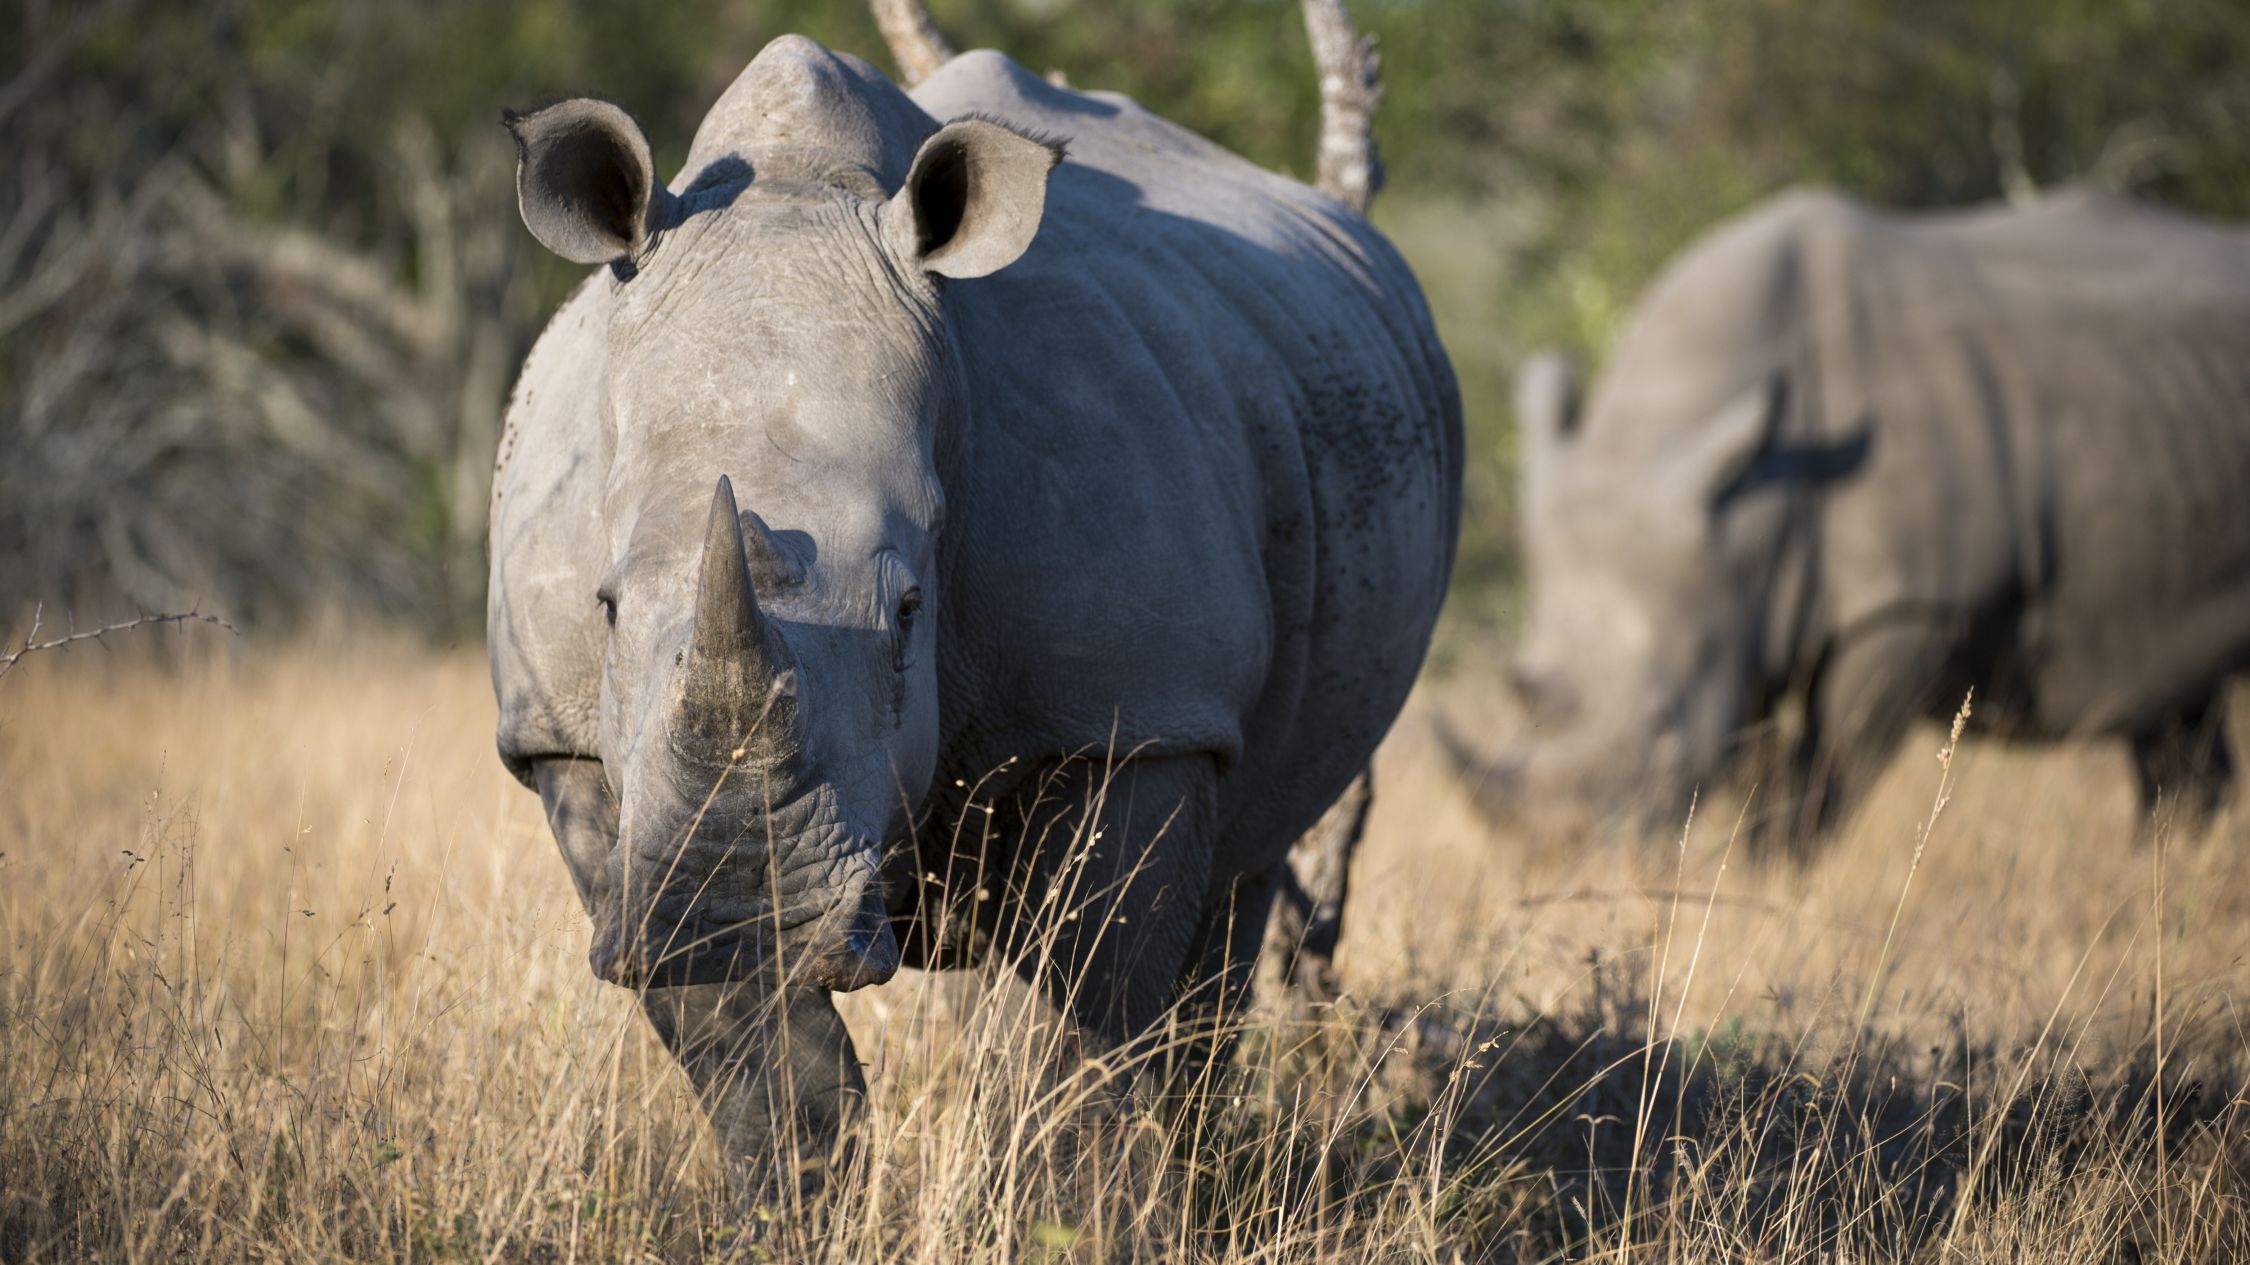 Sự sống còn của loài tê giác Mozambique đang tạo ra sự quan tâm lớn trong việc bảo tồn loài động vật này. Hãy xem hình ảnh để tìm hiểu thêm về sự cố gắng của các chuyên gia trong vấn đề này.